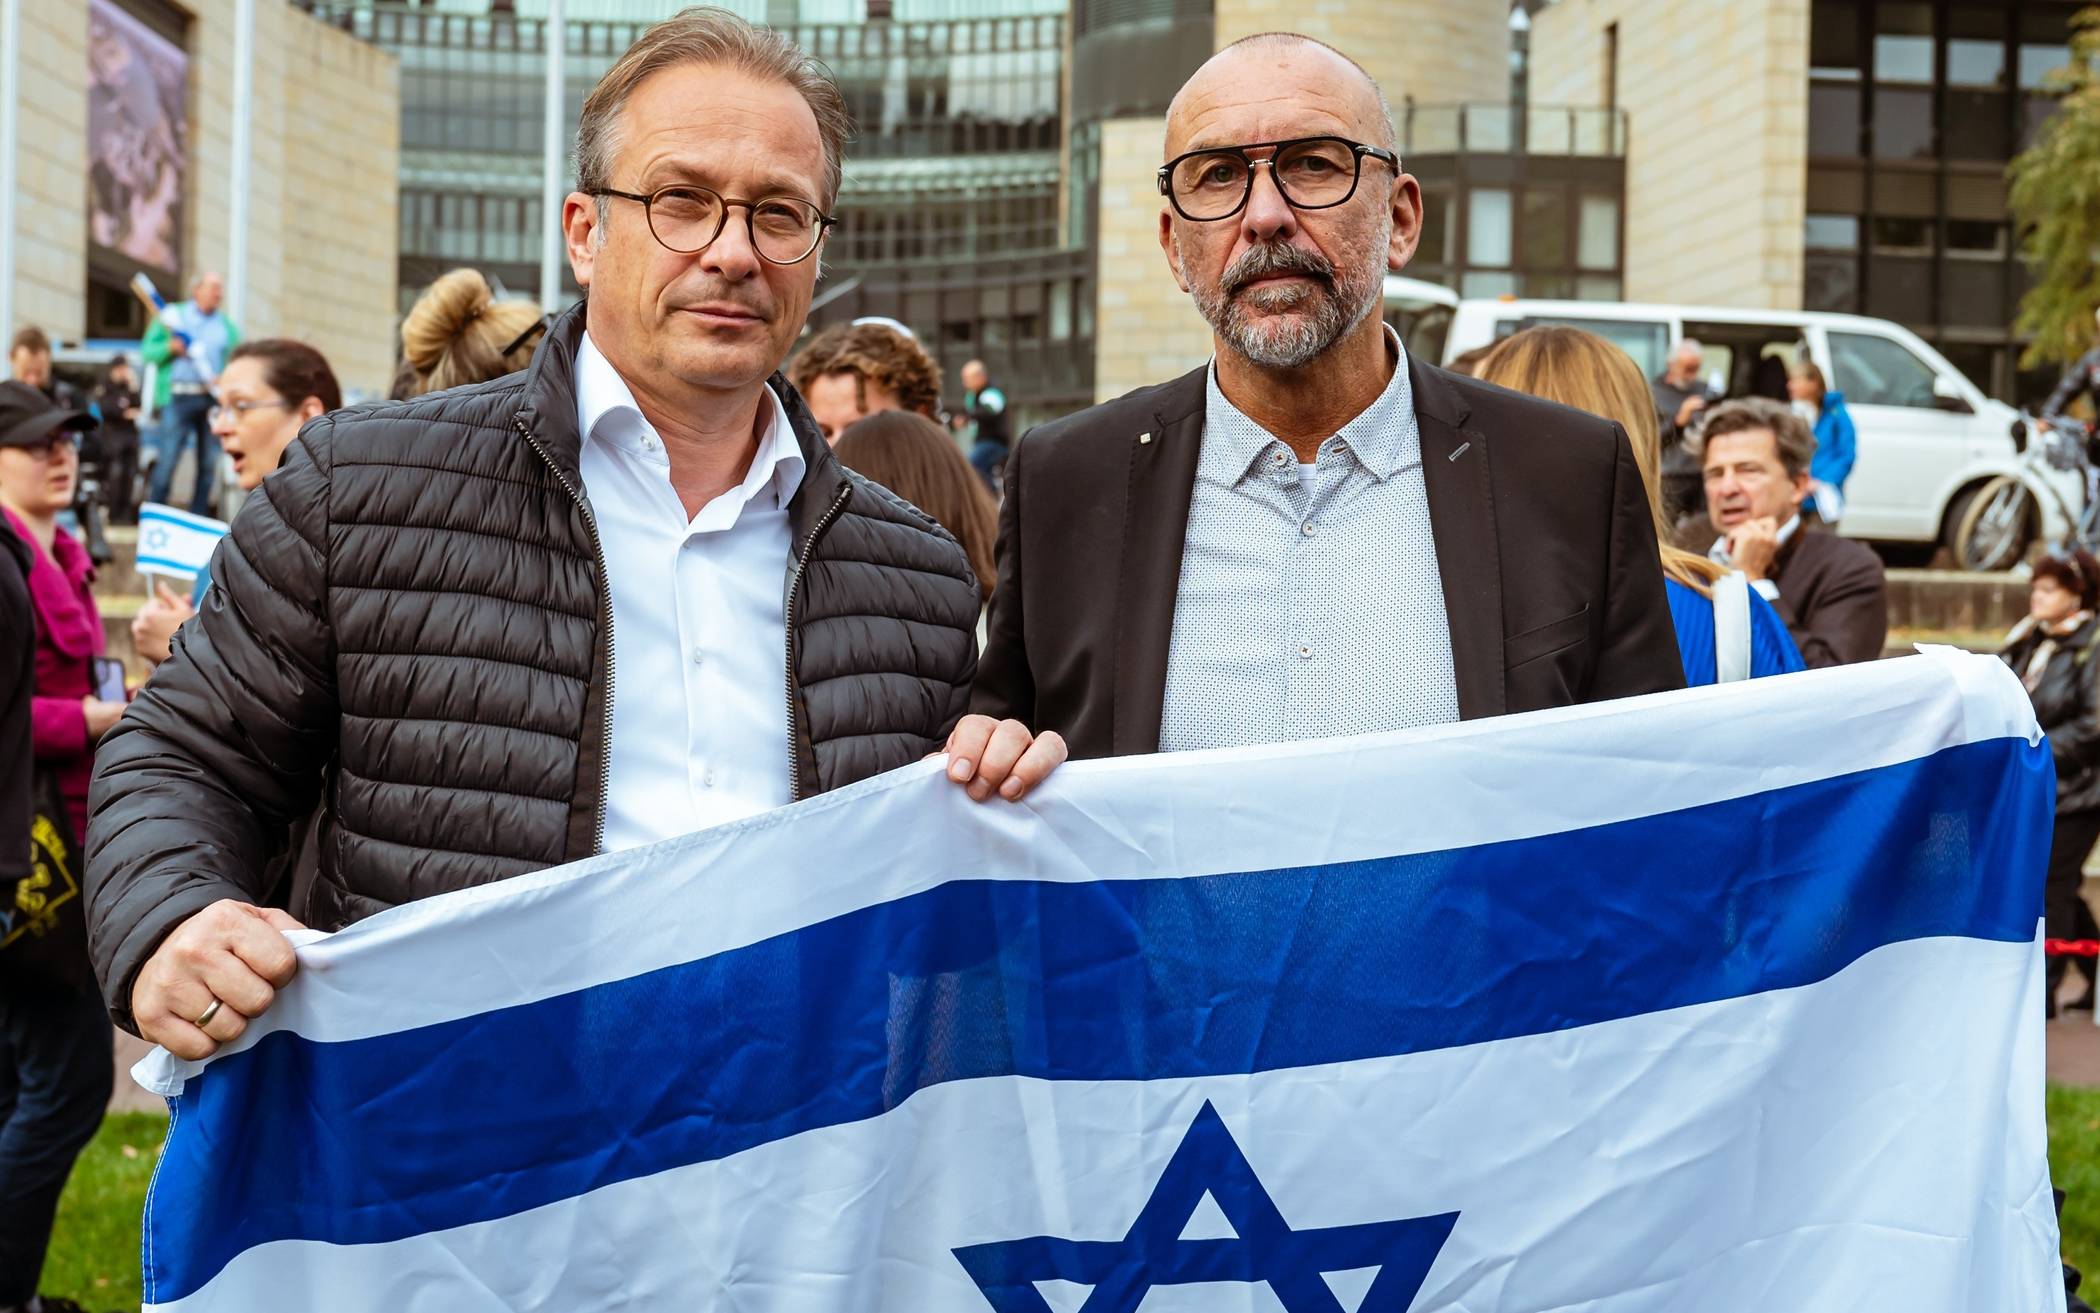   Bert Römgens (r.) und Reiner Breuer waren auch vor dem Landtag in Düsseldorf dabei, jetzt laden sie zur Kundgebung „Frieden für Israel“ in Neuss ein.  